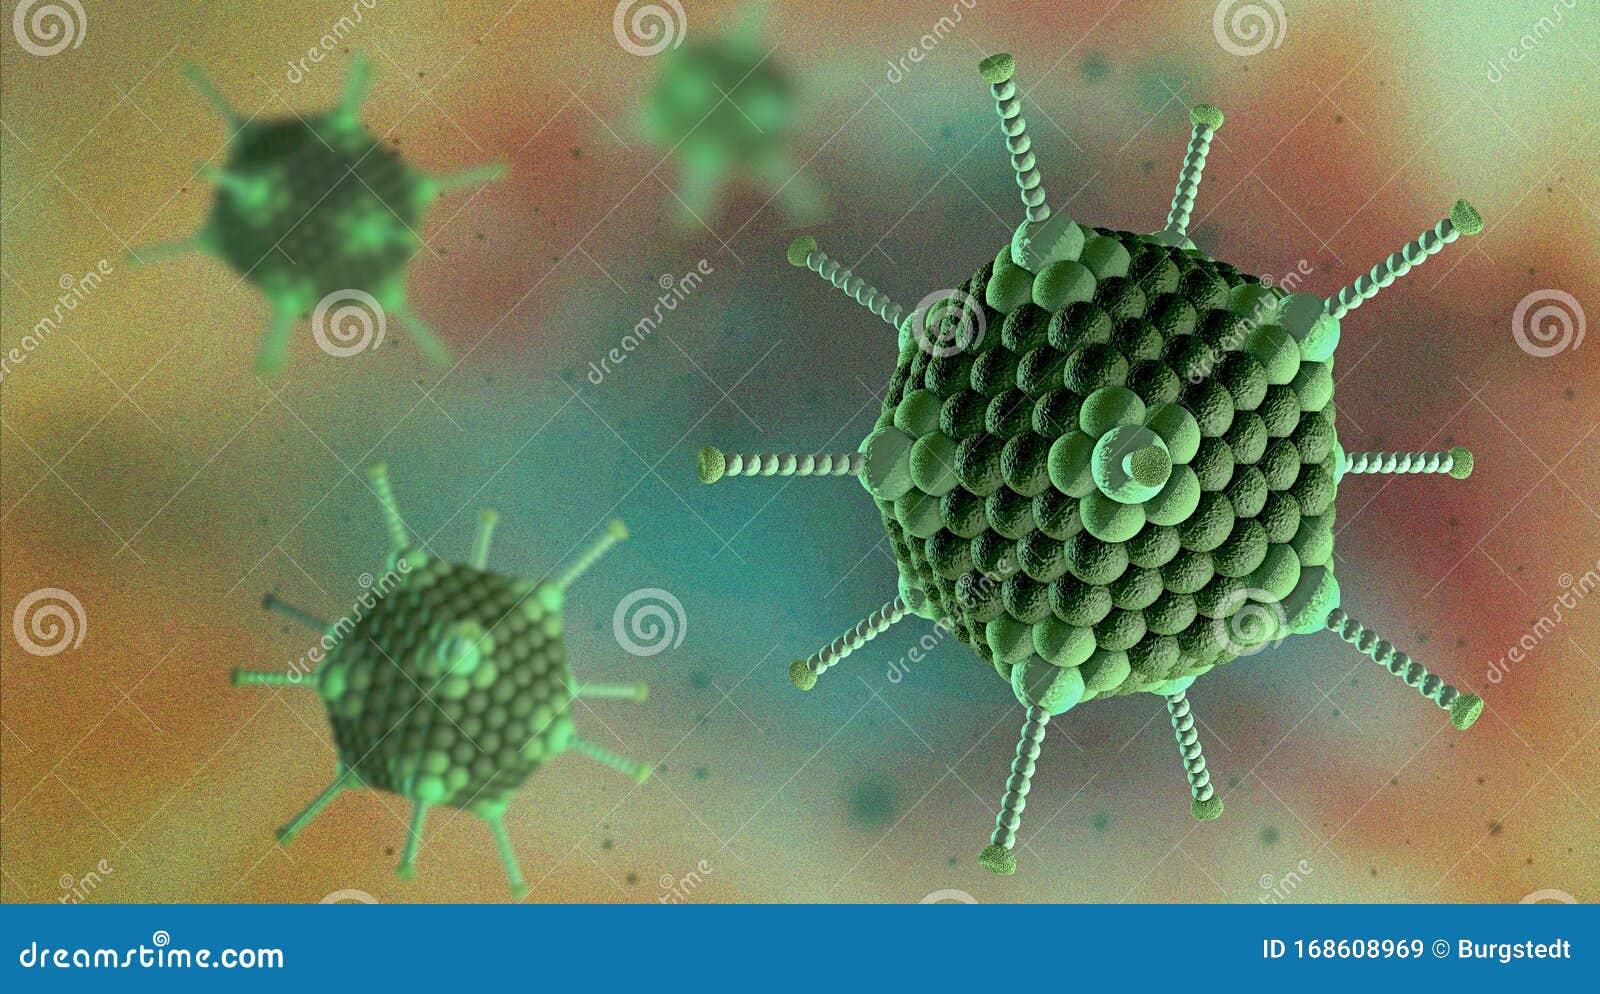 virus cells of the adenovirus family